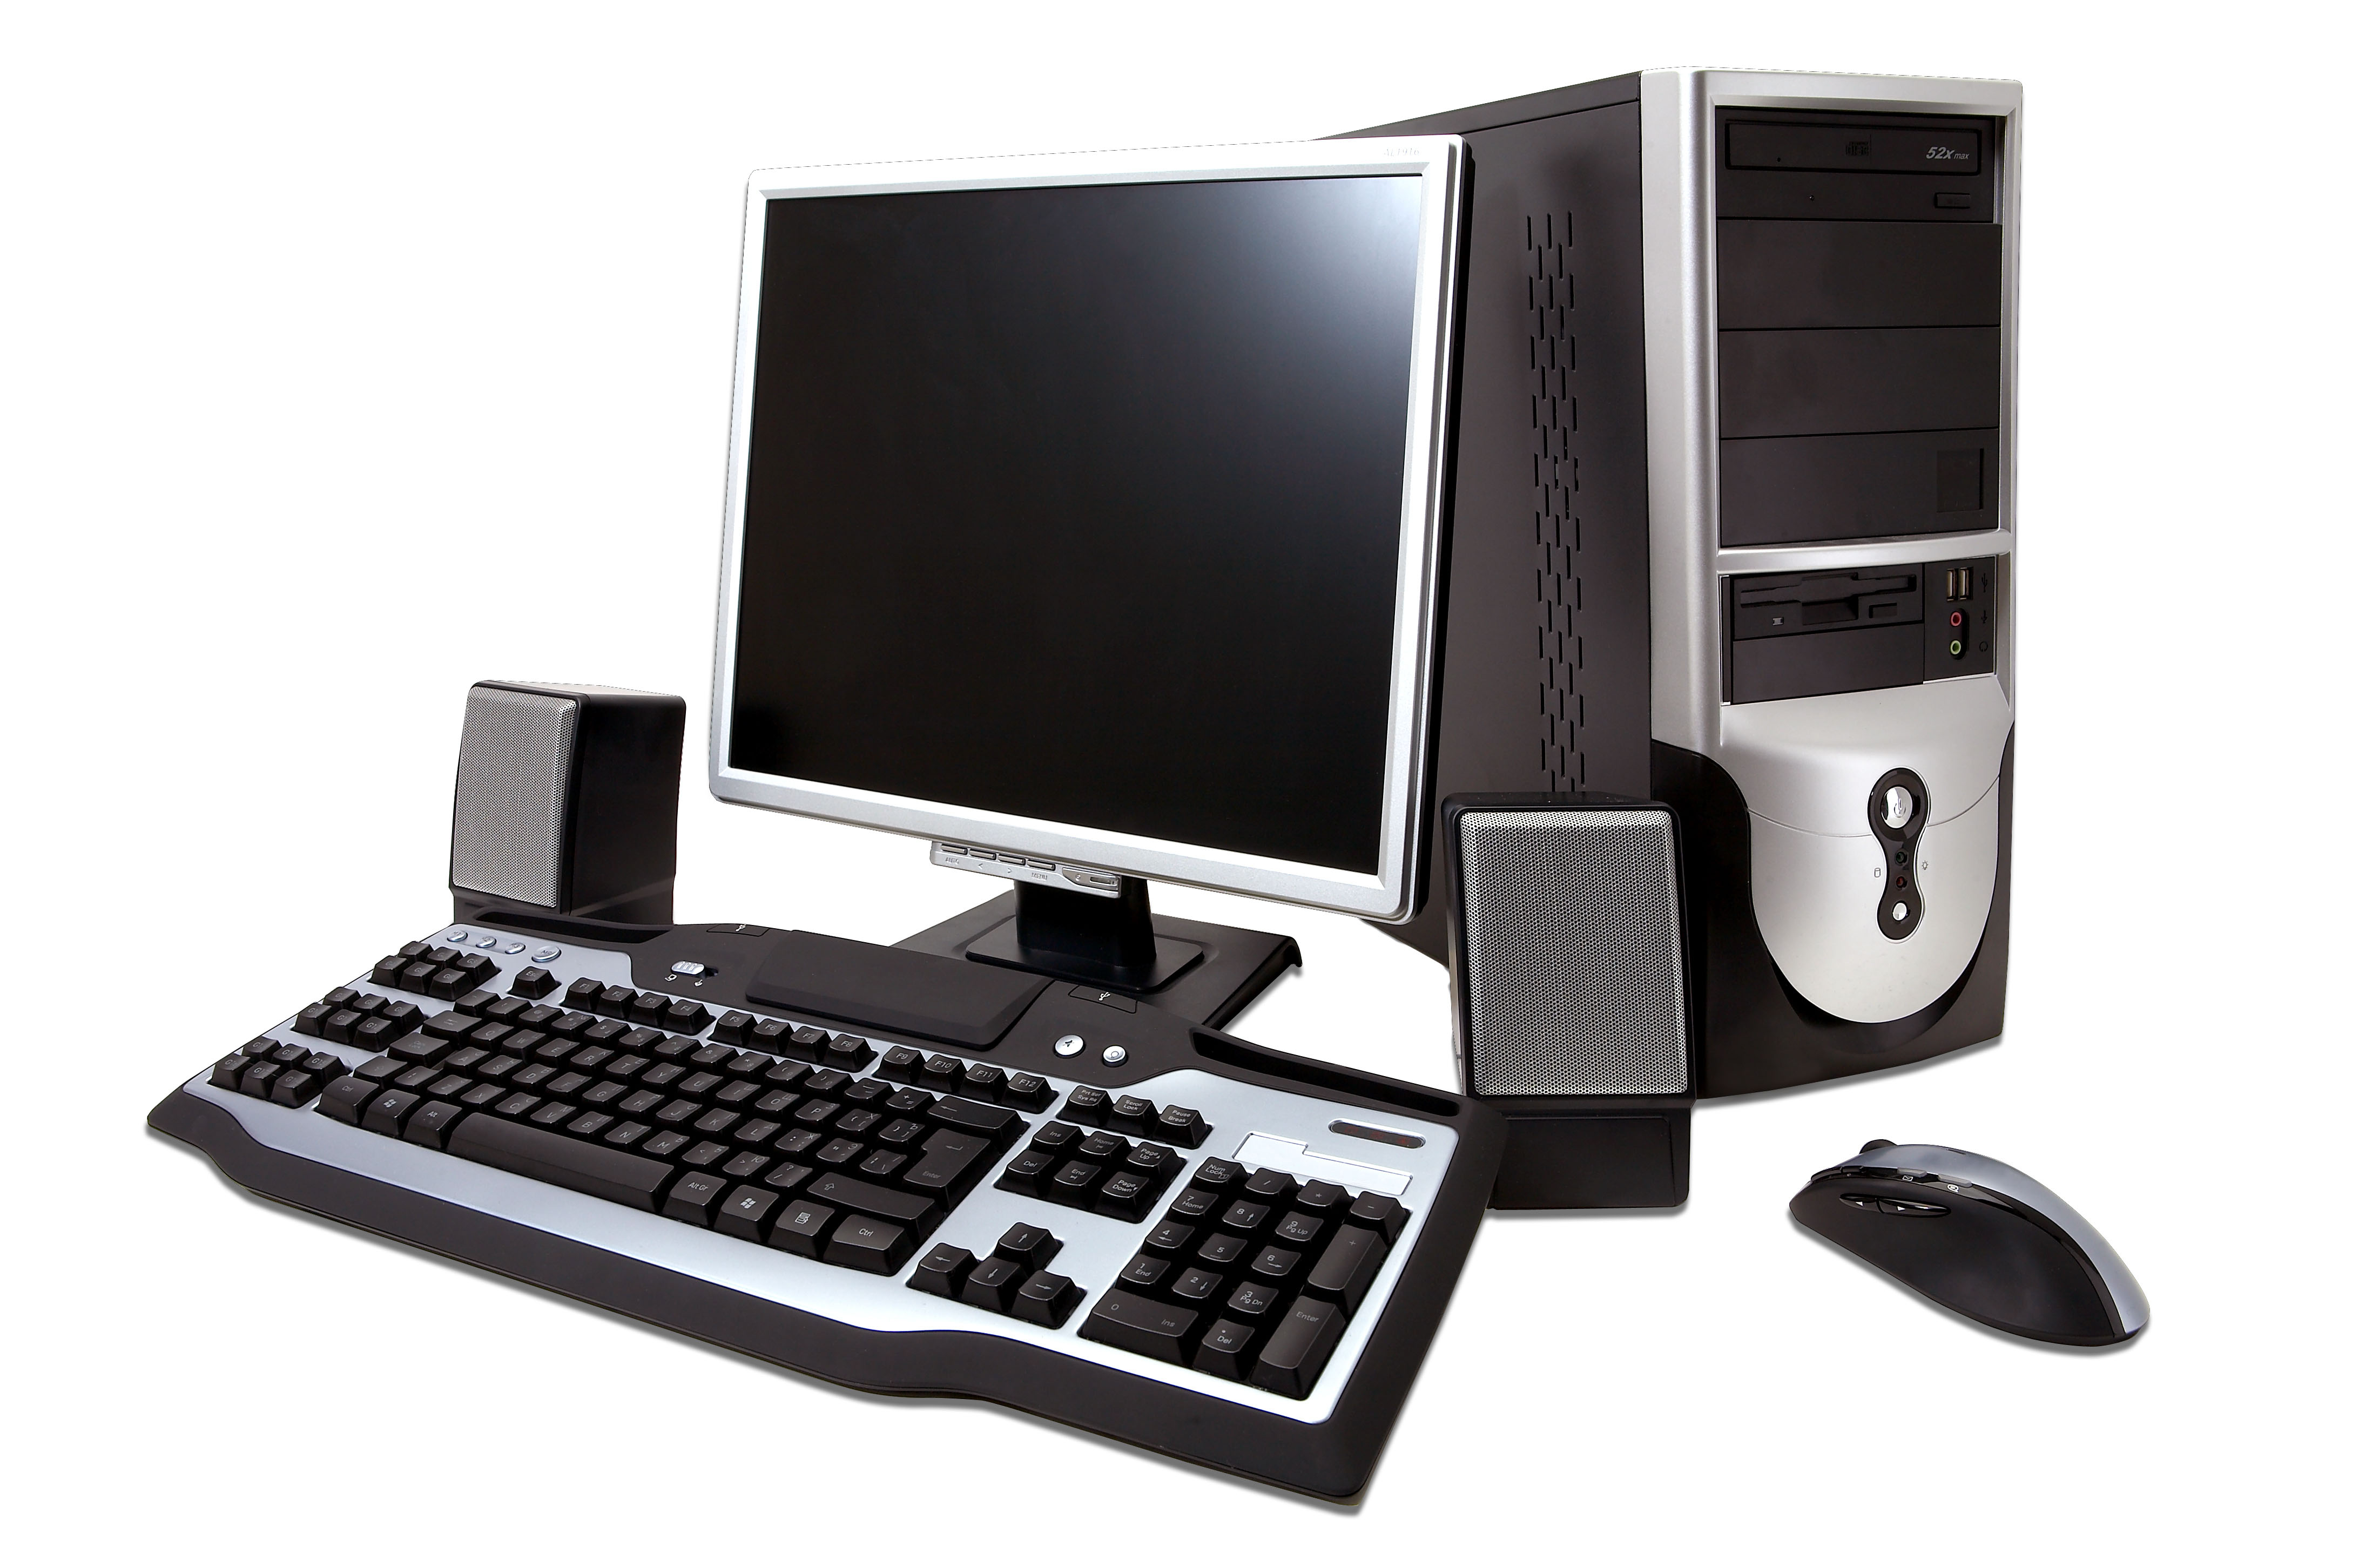 Ти компьютер. Системный блок (компьютерная техника i3-3220). Компьютер (сист. Блок, монитор TFT 27 Acer Black). Инв.. ПК мышь клавиатура монитор 2021. Персональныйпомпьютер.